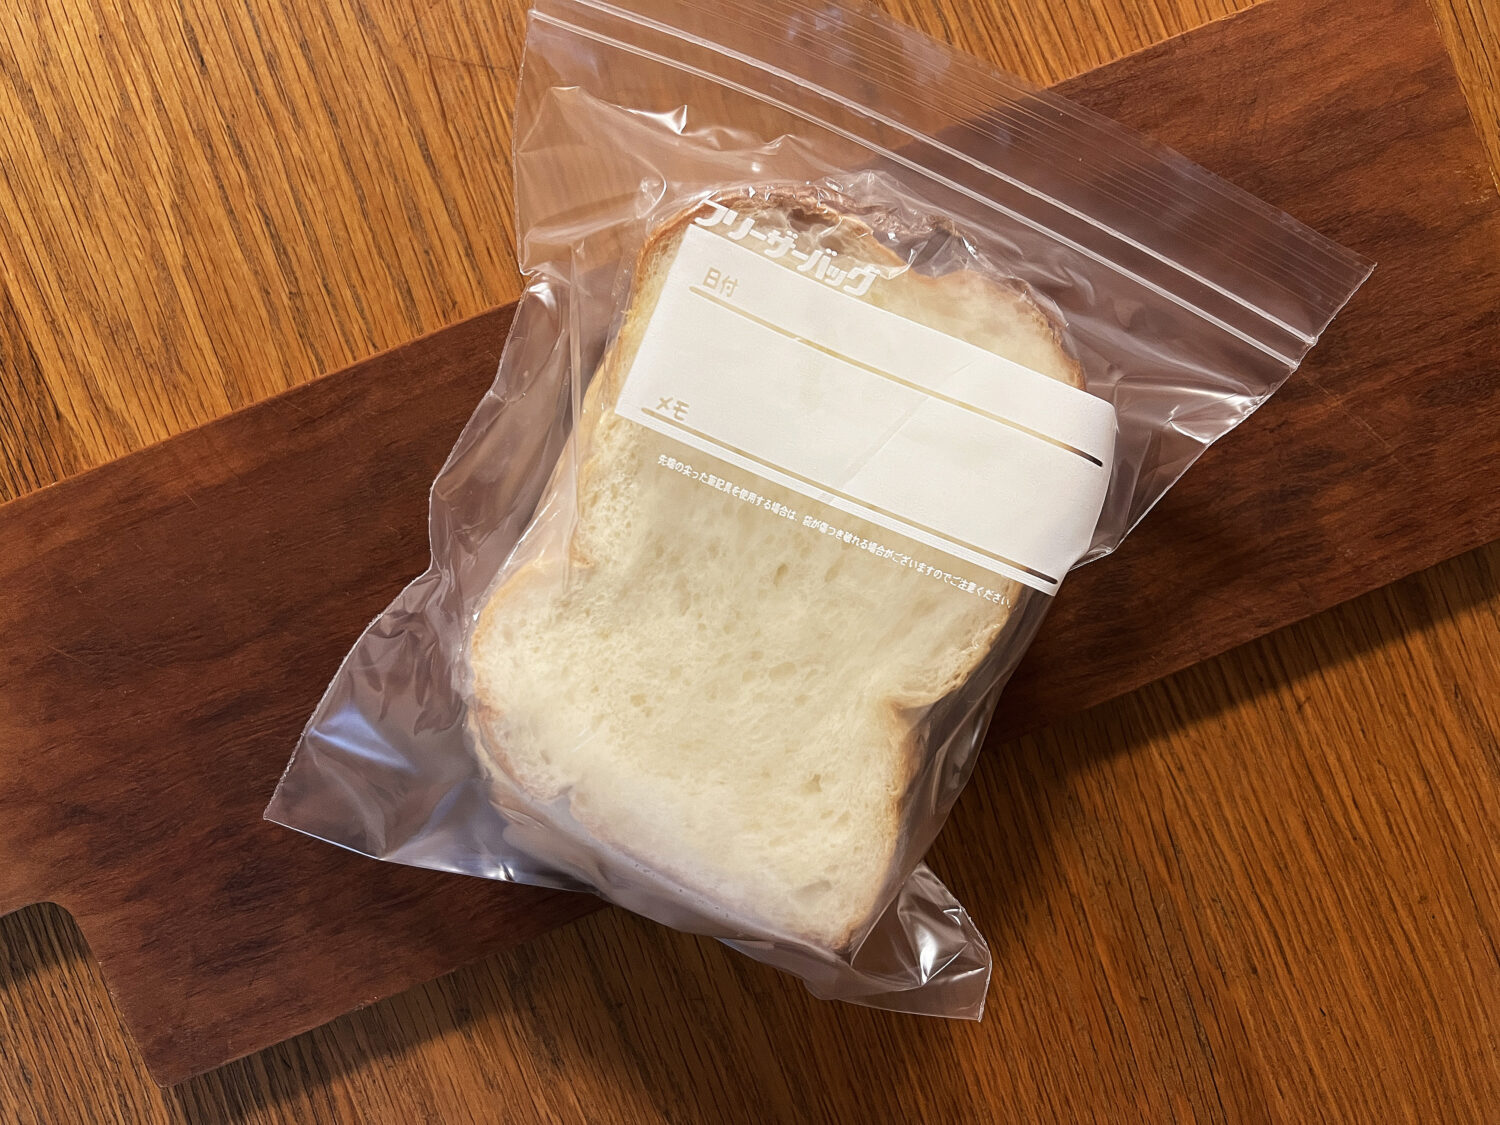 冷凍保存のためにジップロックに入れた食パン